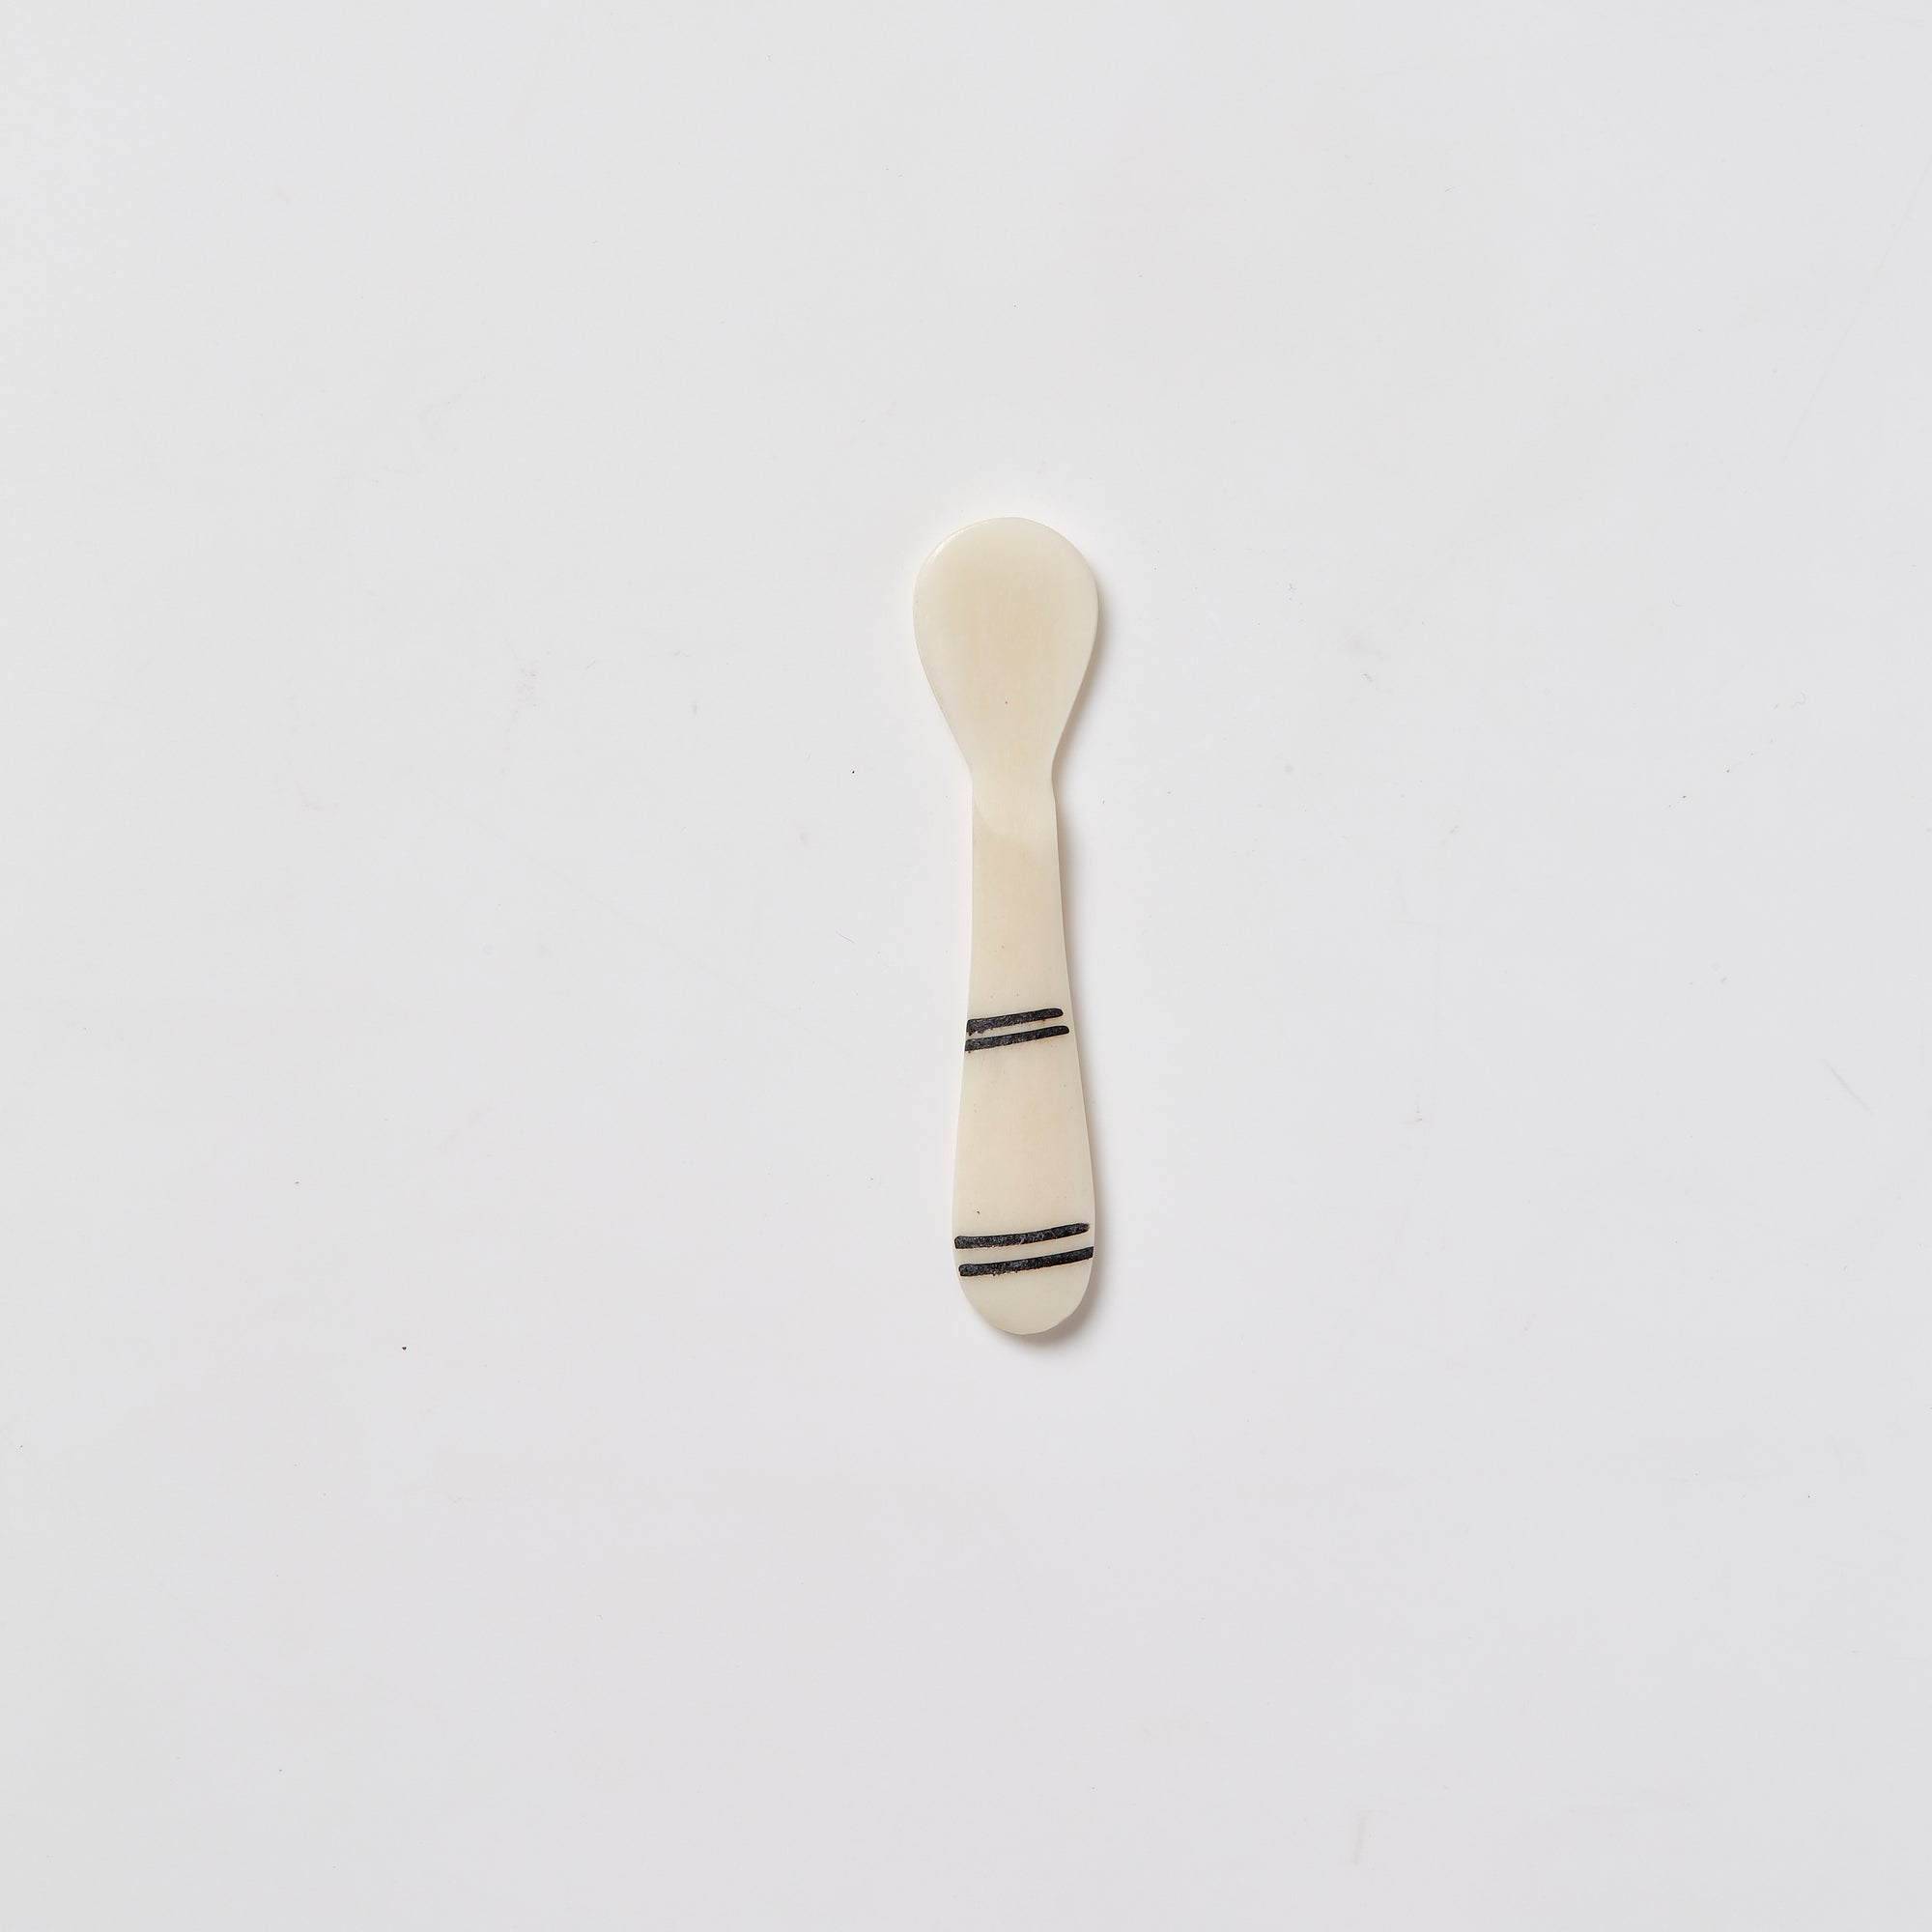 Striped Bone Spoon - Small